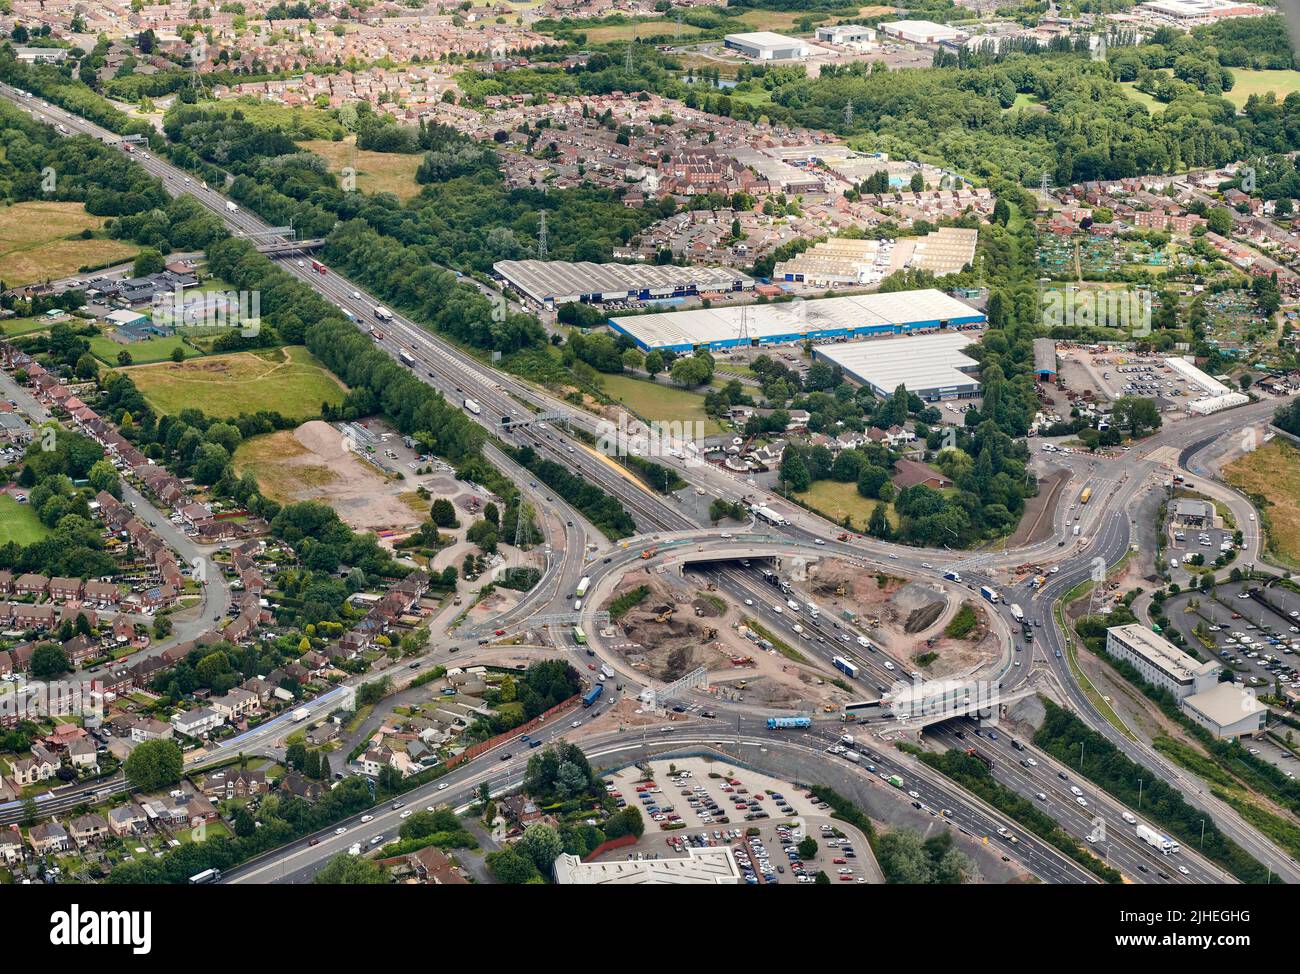 La reconstruction de la sortie 10 sur l'autoroute M6, tirée des airs, reliant la route de l'arrière-pays et Walsall, West Midlands, Royaume-Uni Banque D'Images